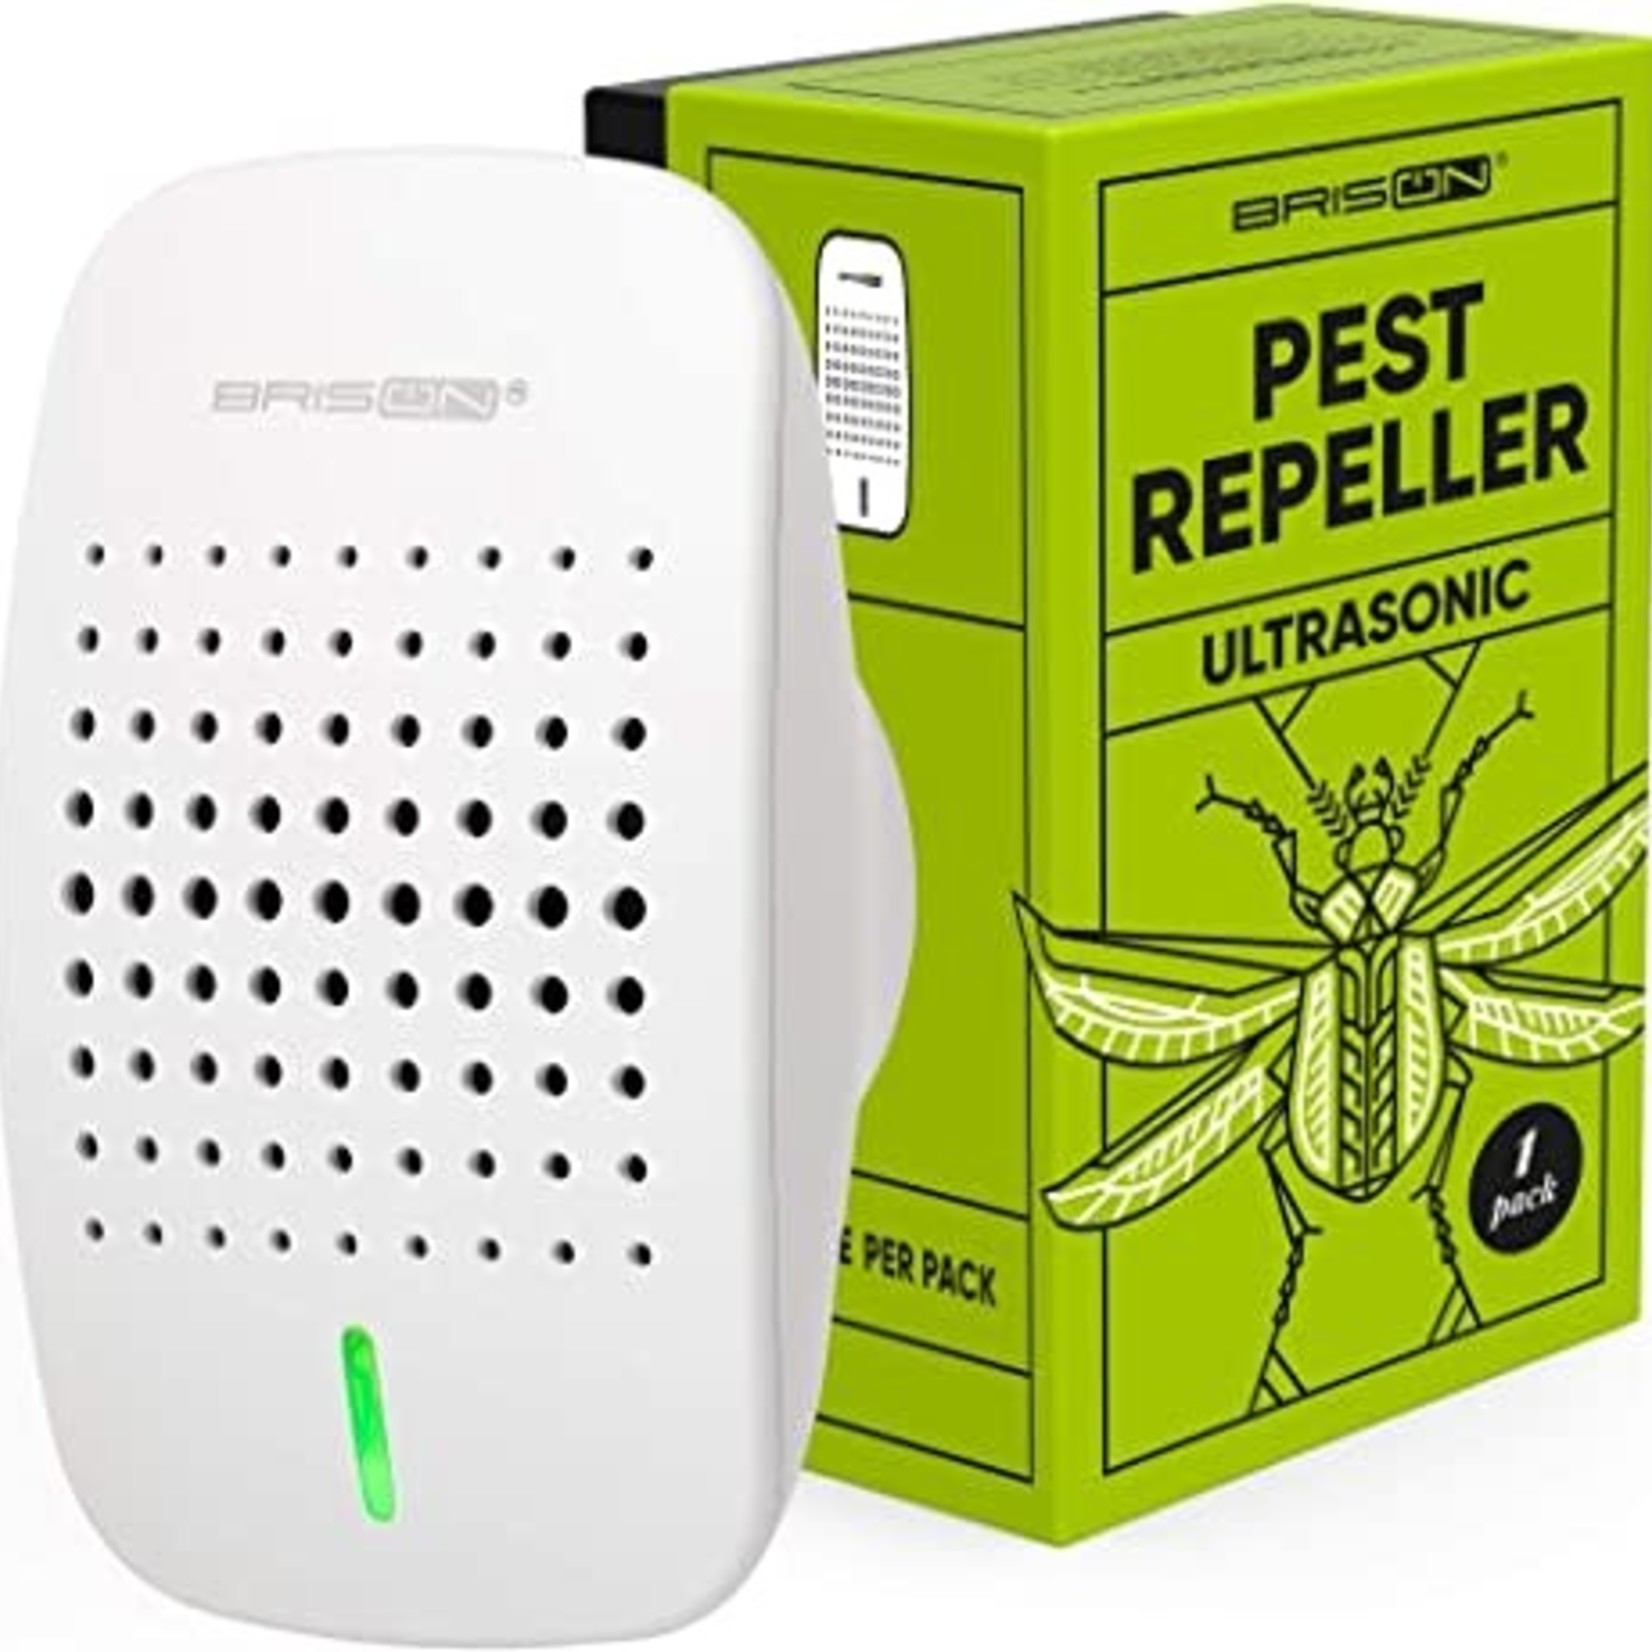 Brison Ultrasonic Pest Repeller